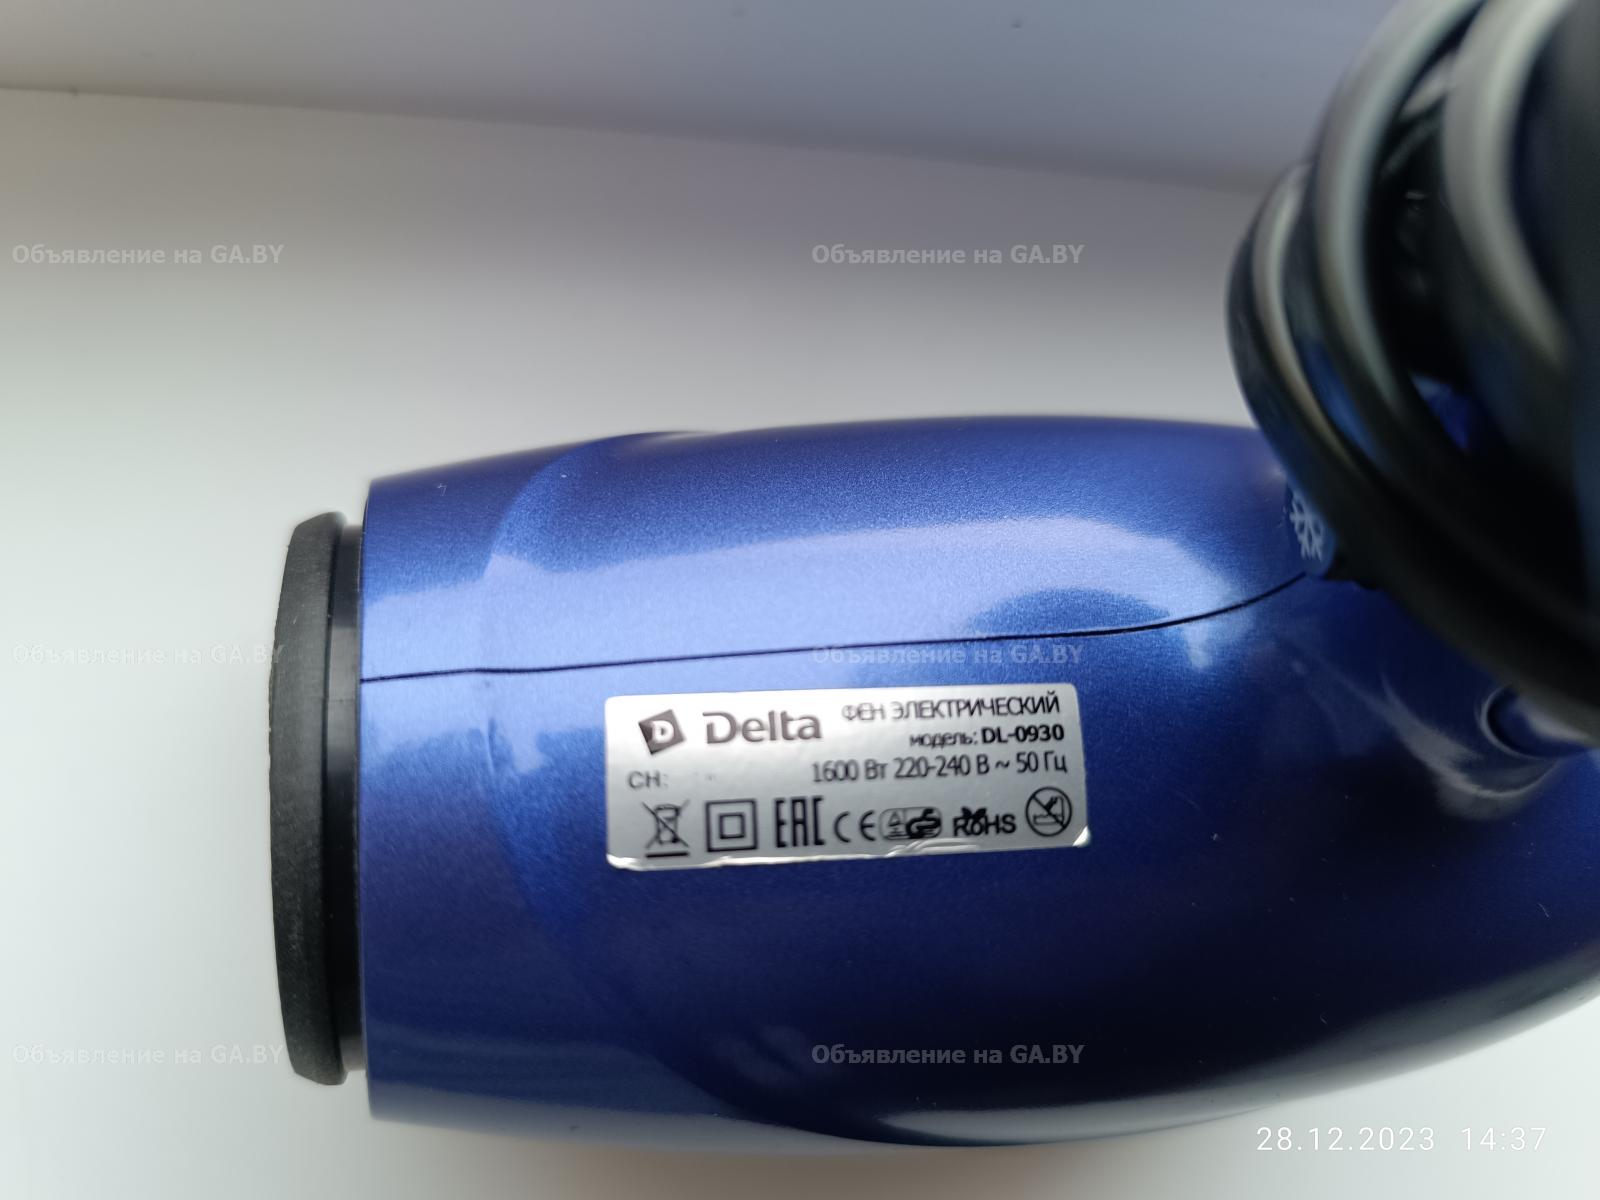 Продам Фен электрический дорожный DELTA DL-0930. Мощность 1600 вт.  - GA.BY